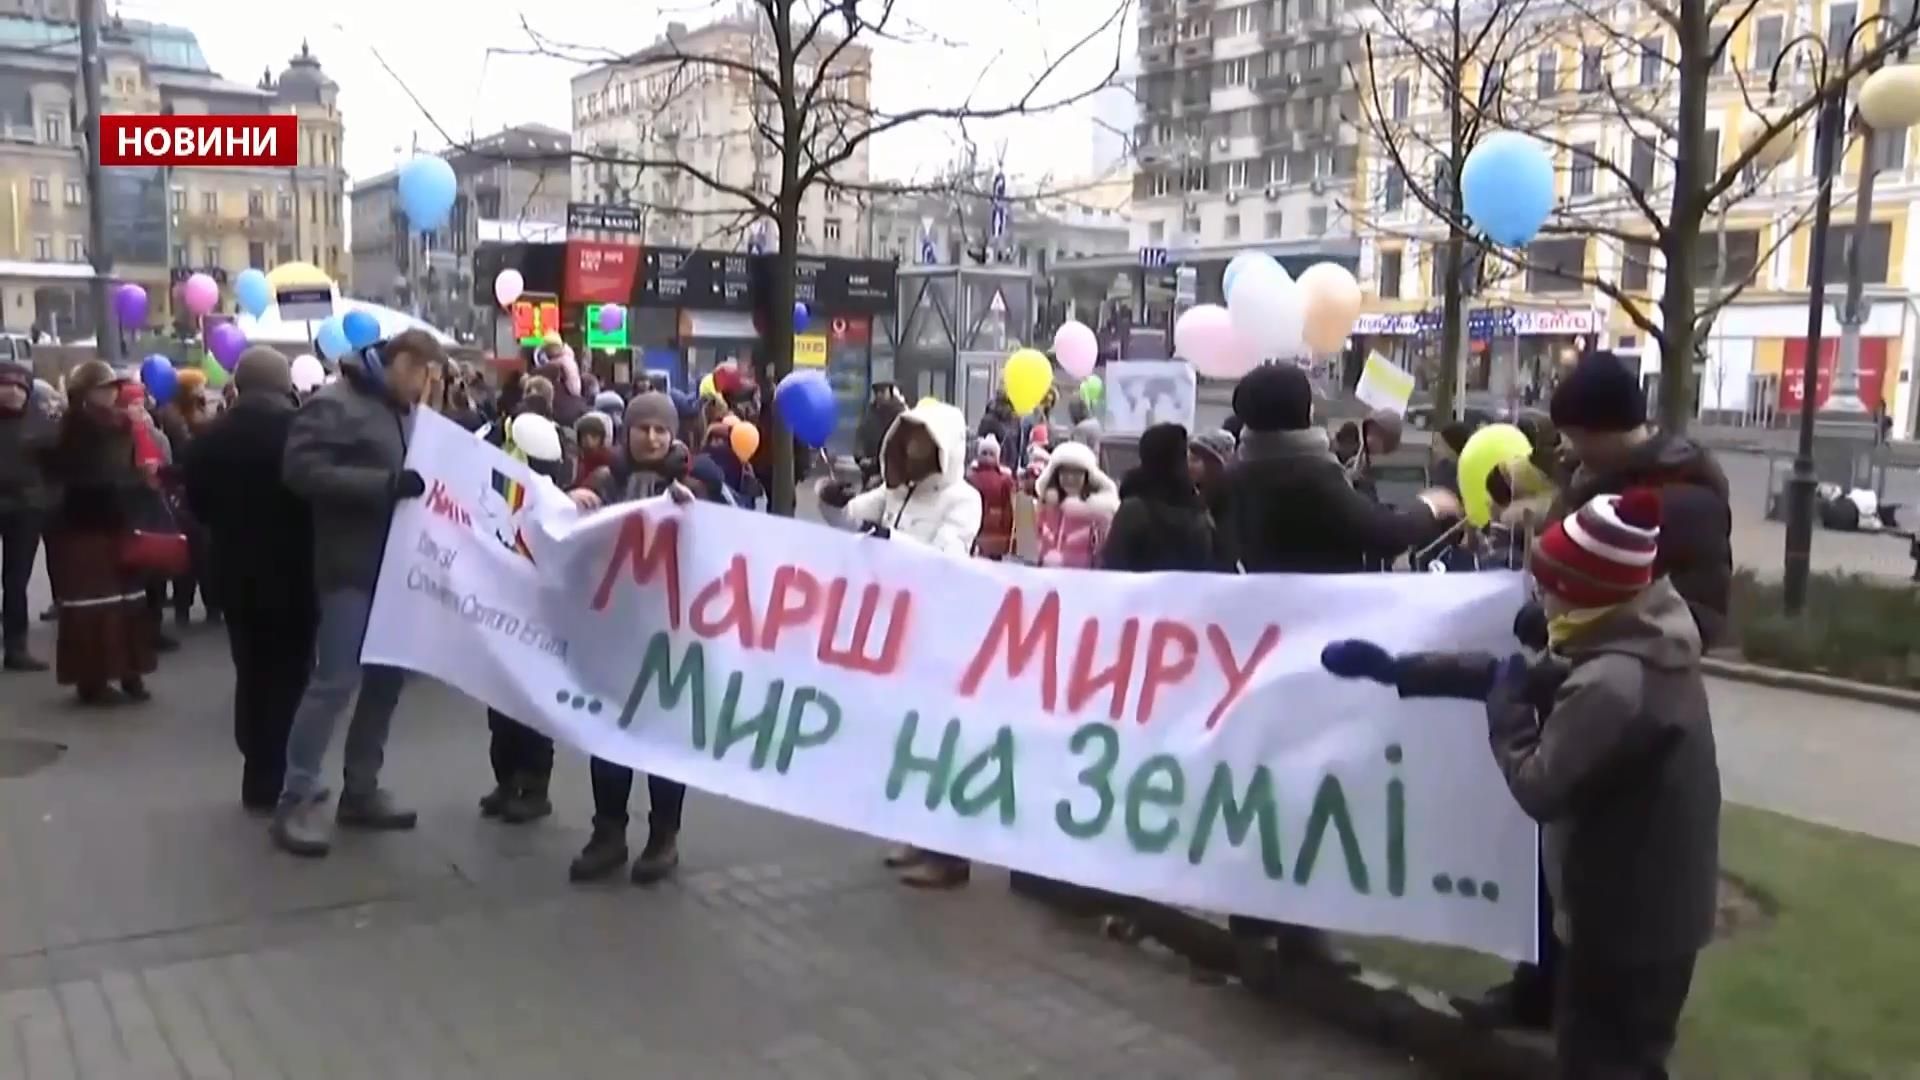 Щоб не кулаками, а розумом: як діти в Києві вийшли на марш "Мир на землі"